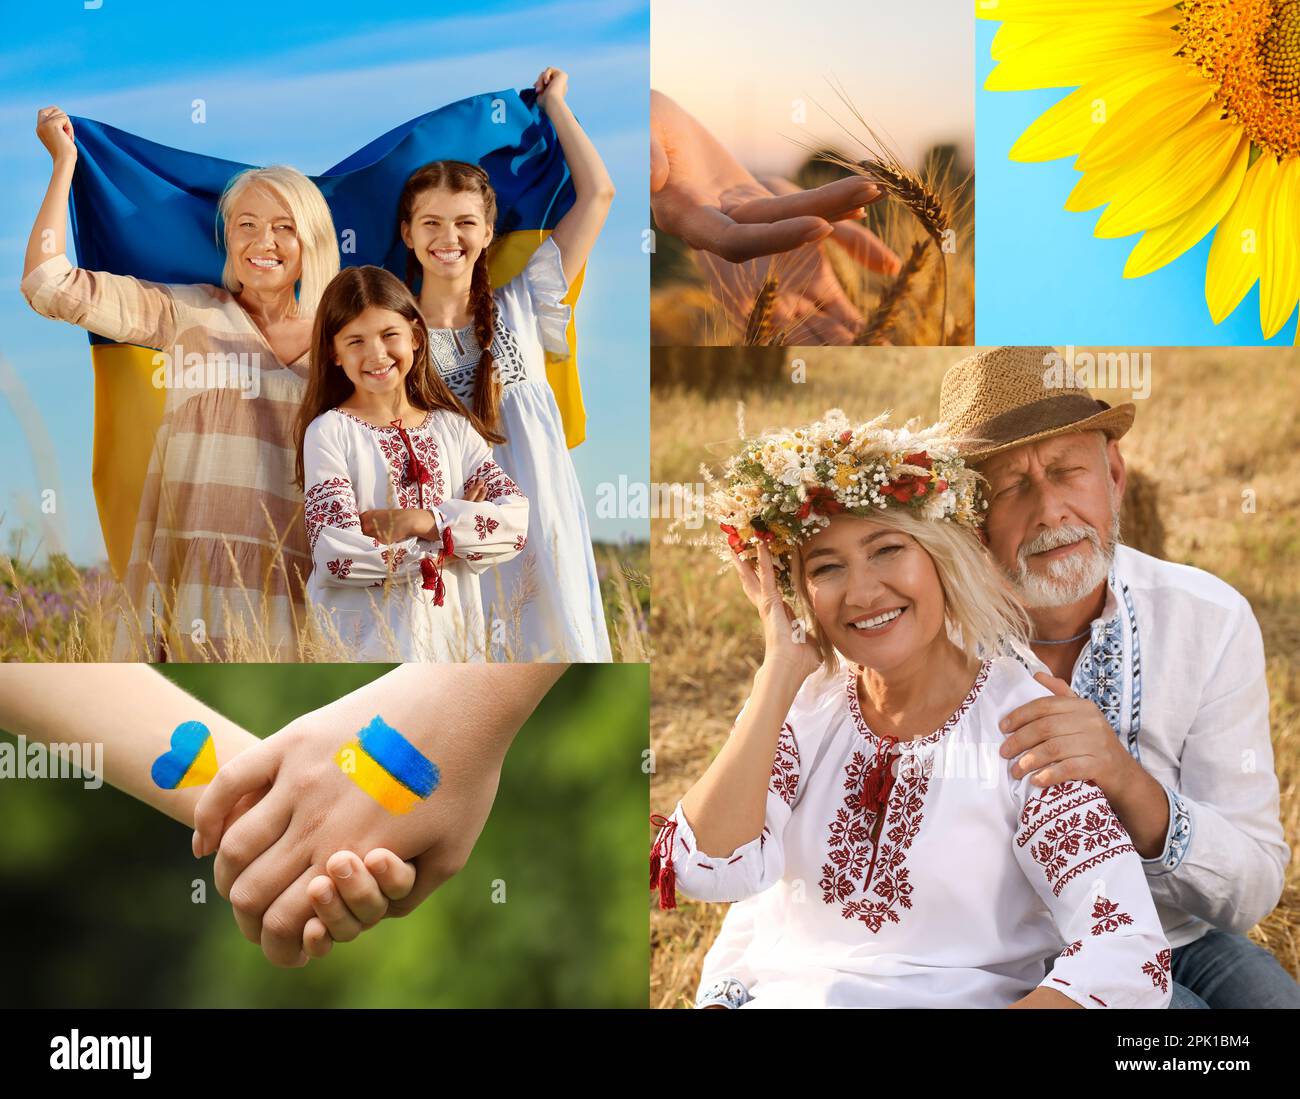 Collage mit verschiedenen wunderschönen Fotos, die der ukrainischen Kultur gewidmet sind Stockfoto